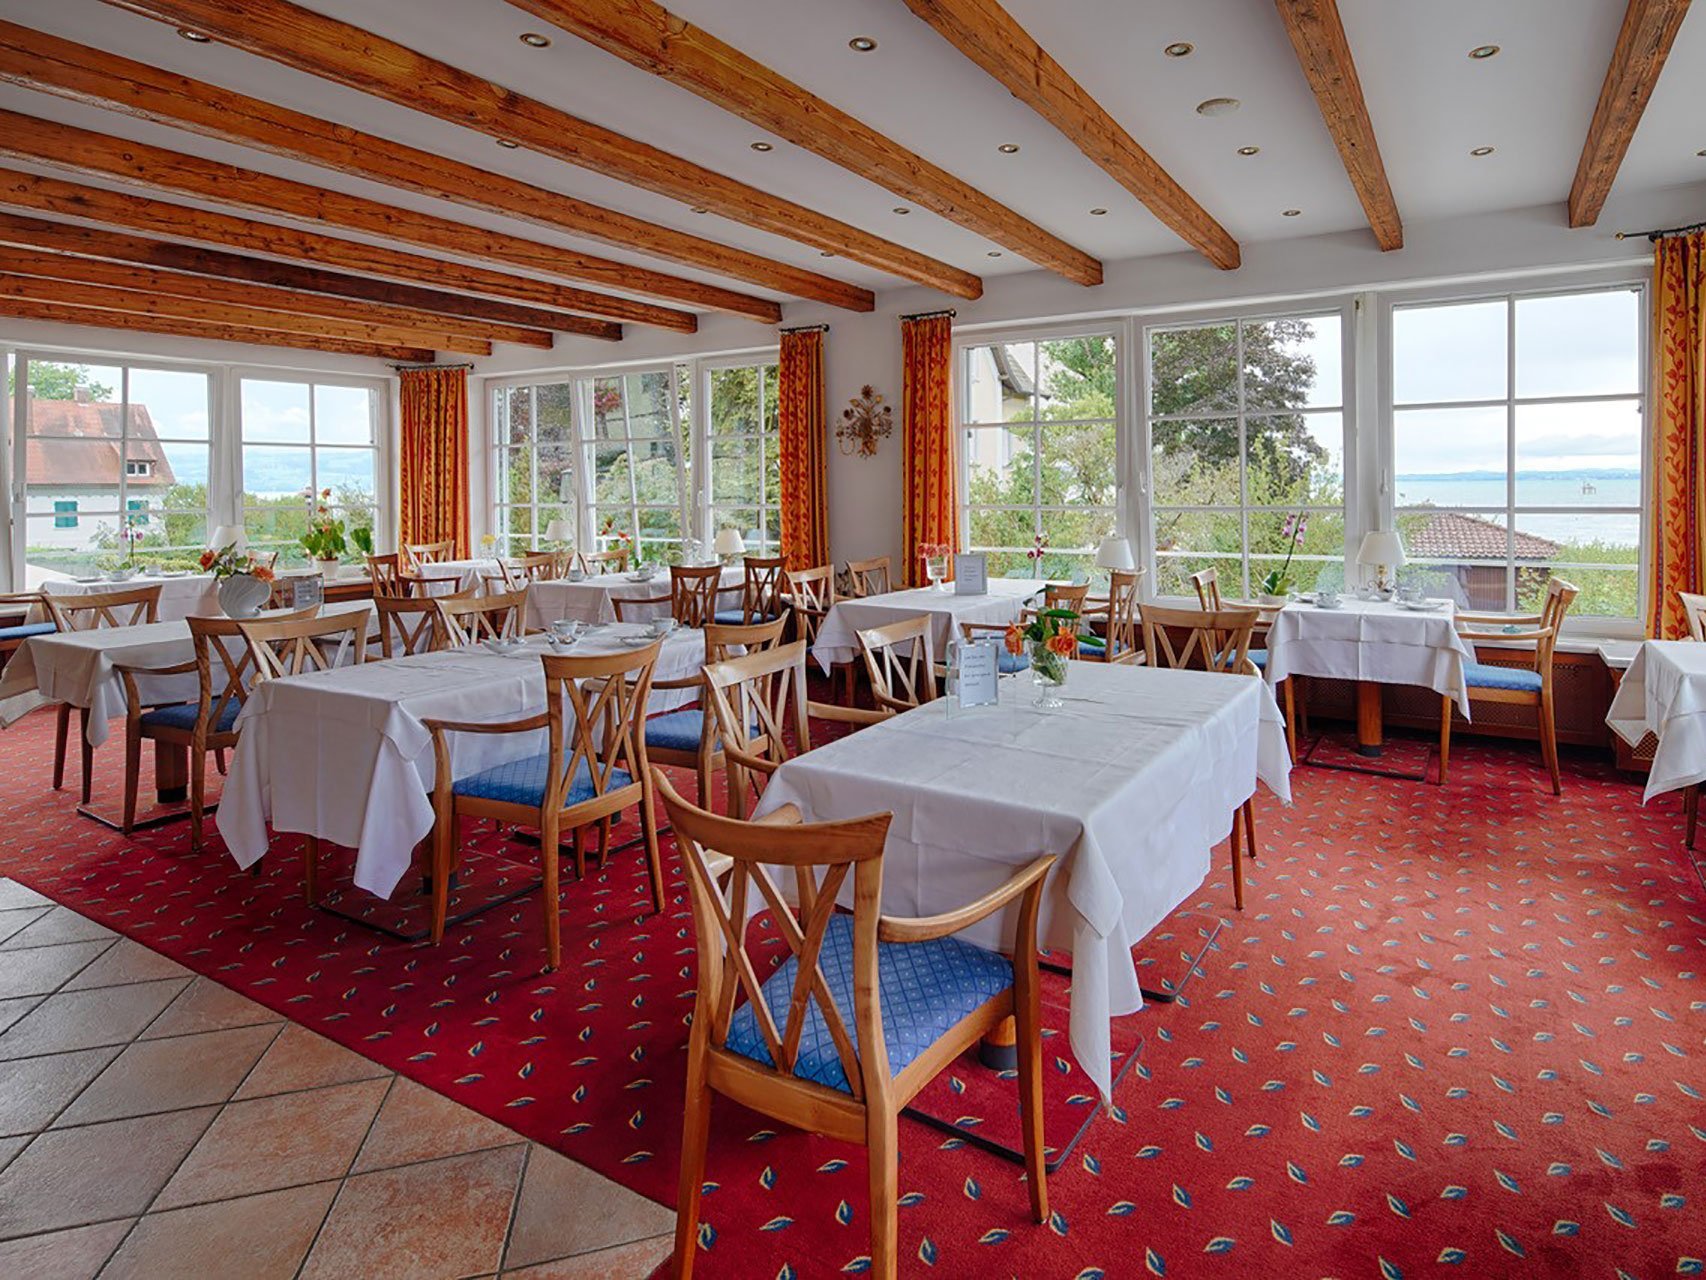 Das Restaurant von Innen der Seeperle am Bodensee